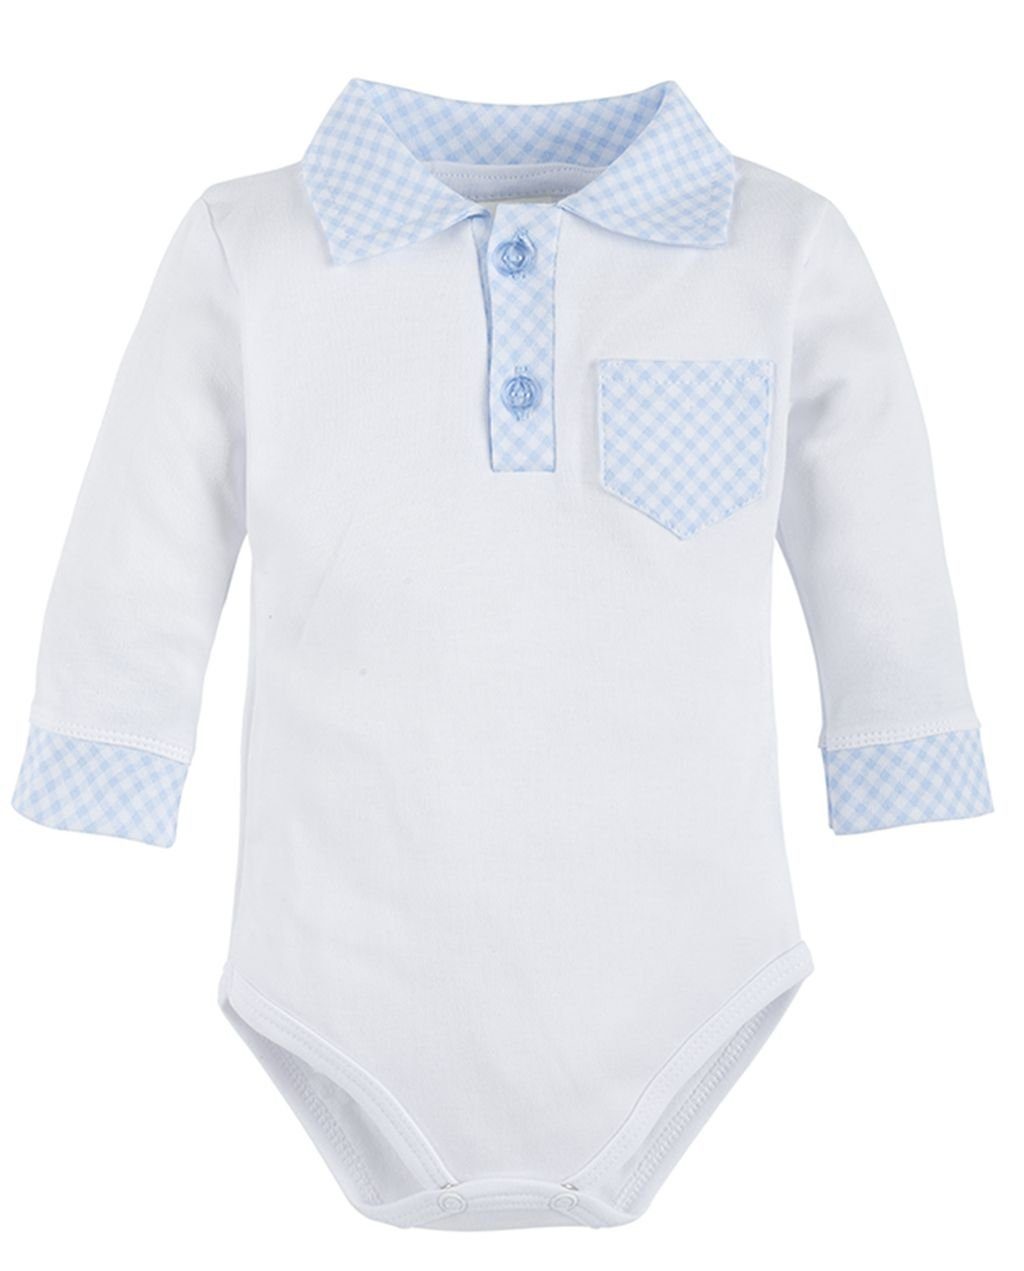 Makoma Hemdbody »Baby Kleidung Jungen Langarm Hemd Body Weiß/Blau« 100%  Baumwolle online kaufen | OTTO